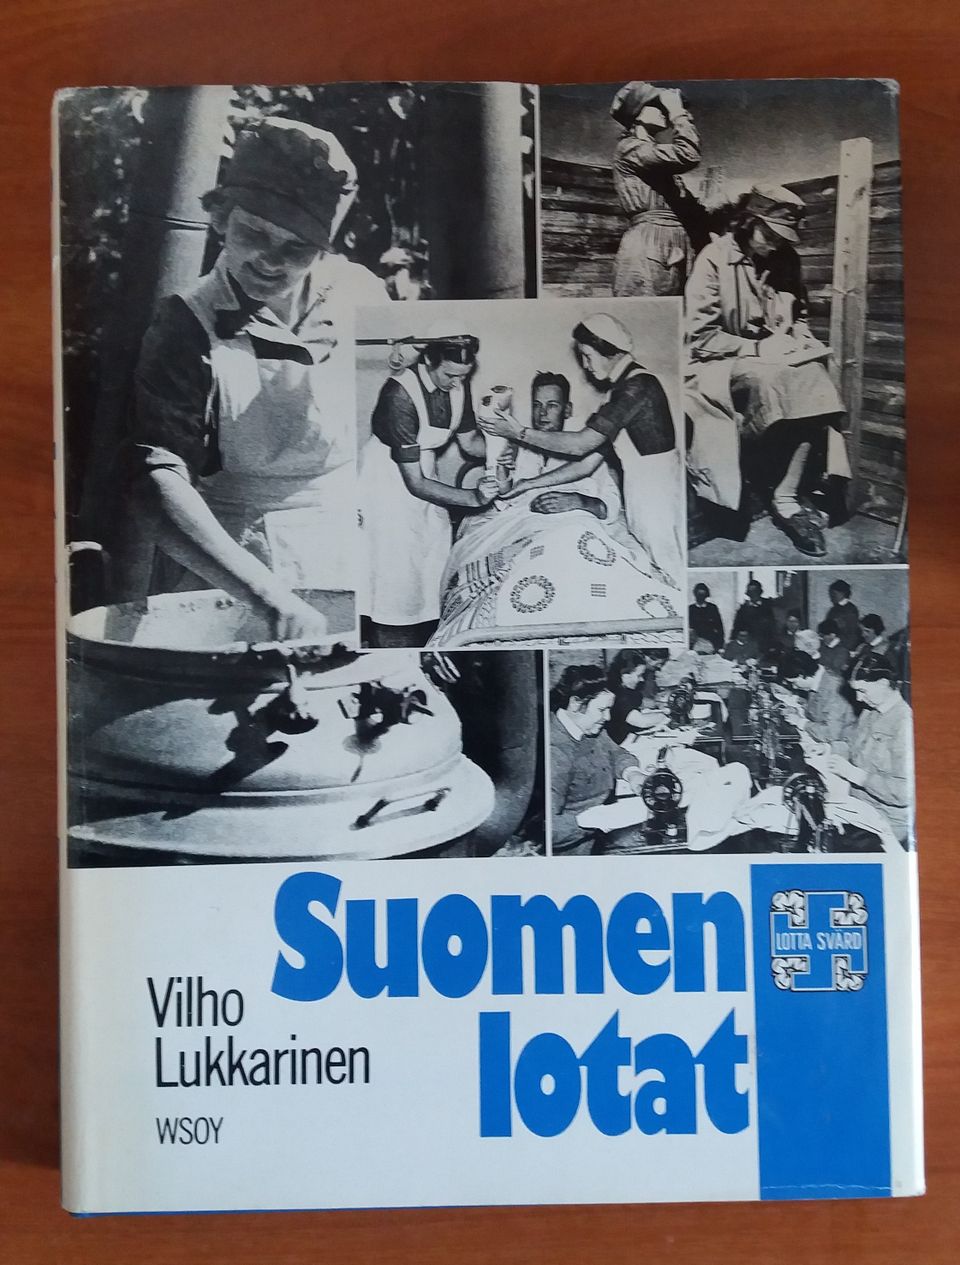 Vilho Lukkarinen SUOMEN LOTAT WSOY 1981